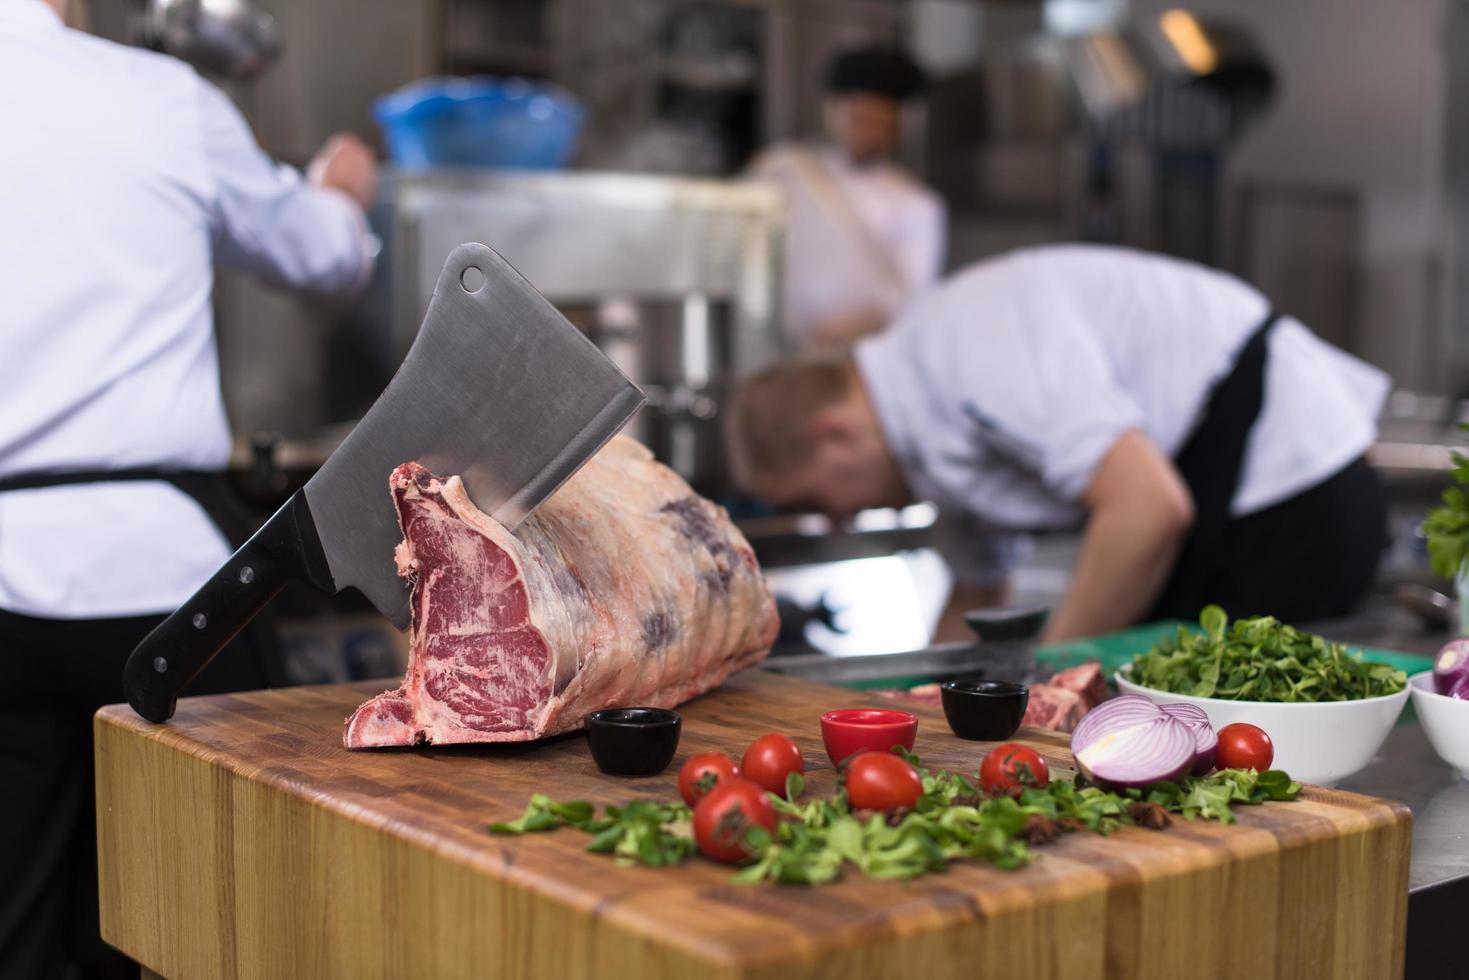 chef cortando grande pedaço de carne foto